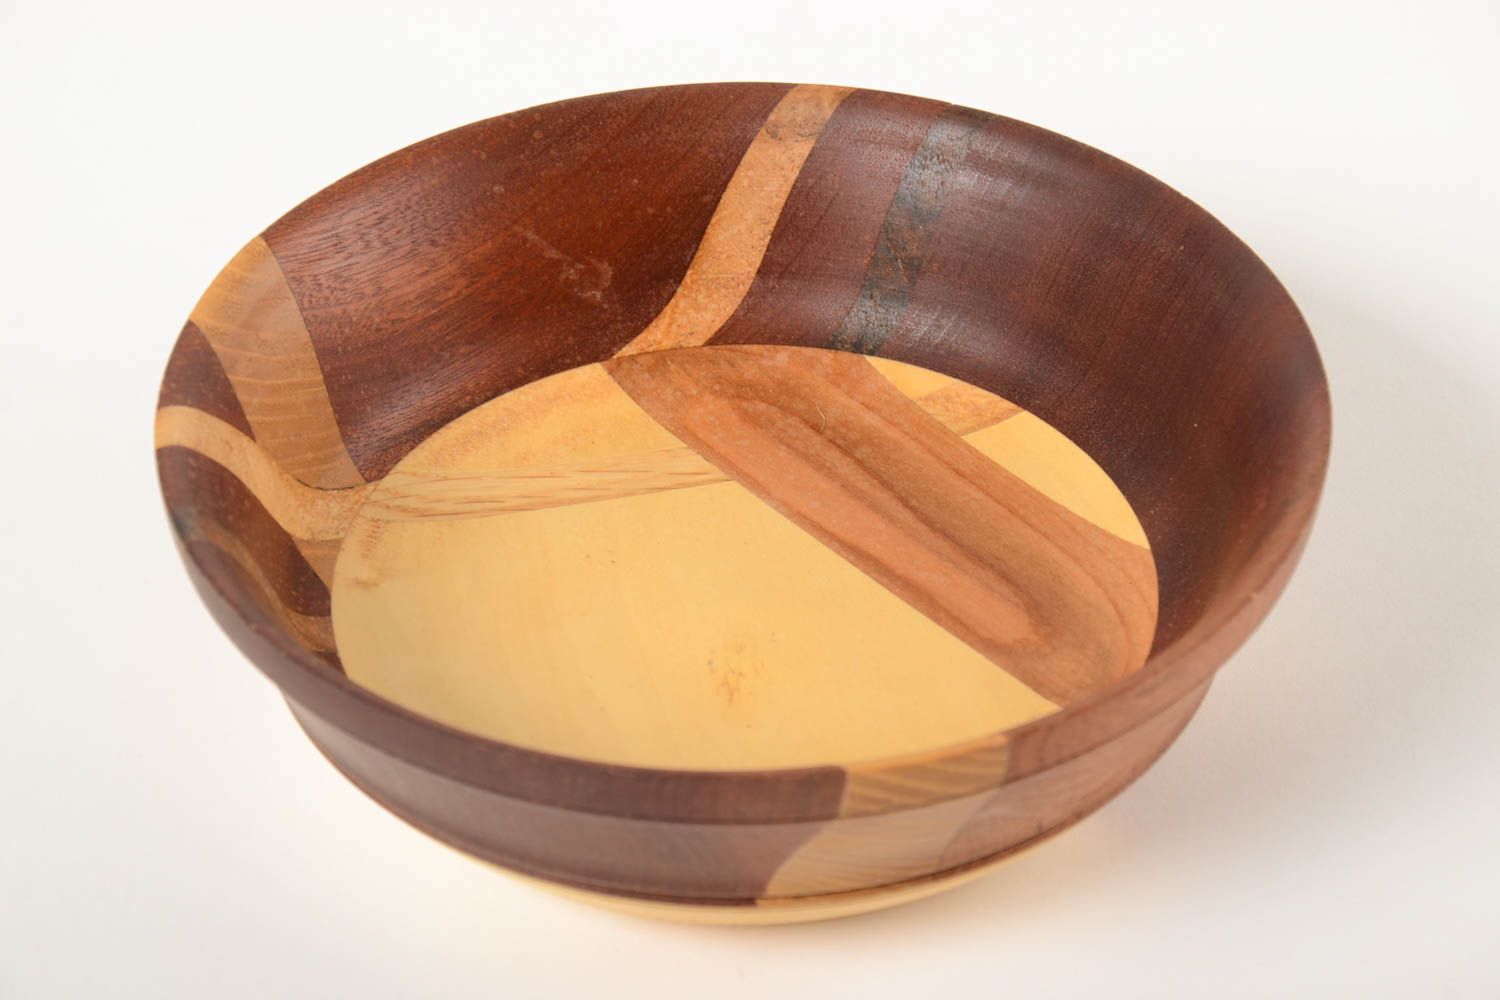 Beautiful handmade wooden bowl kitchen supplies kitchen design gift ideas photo 3